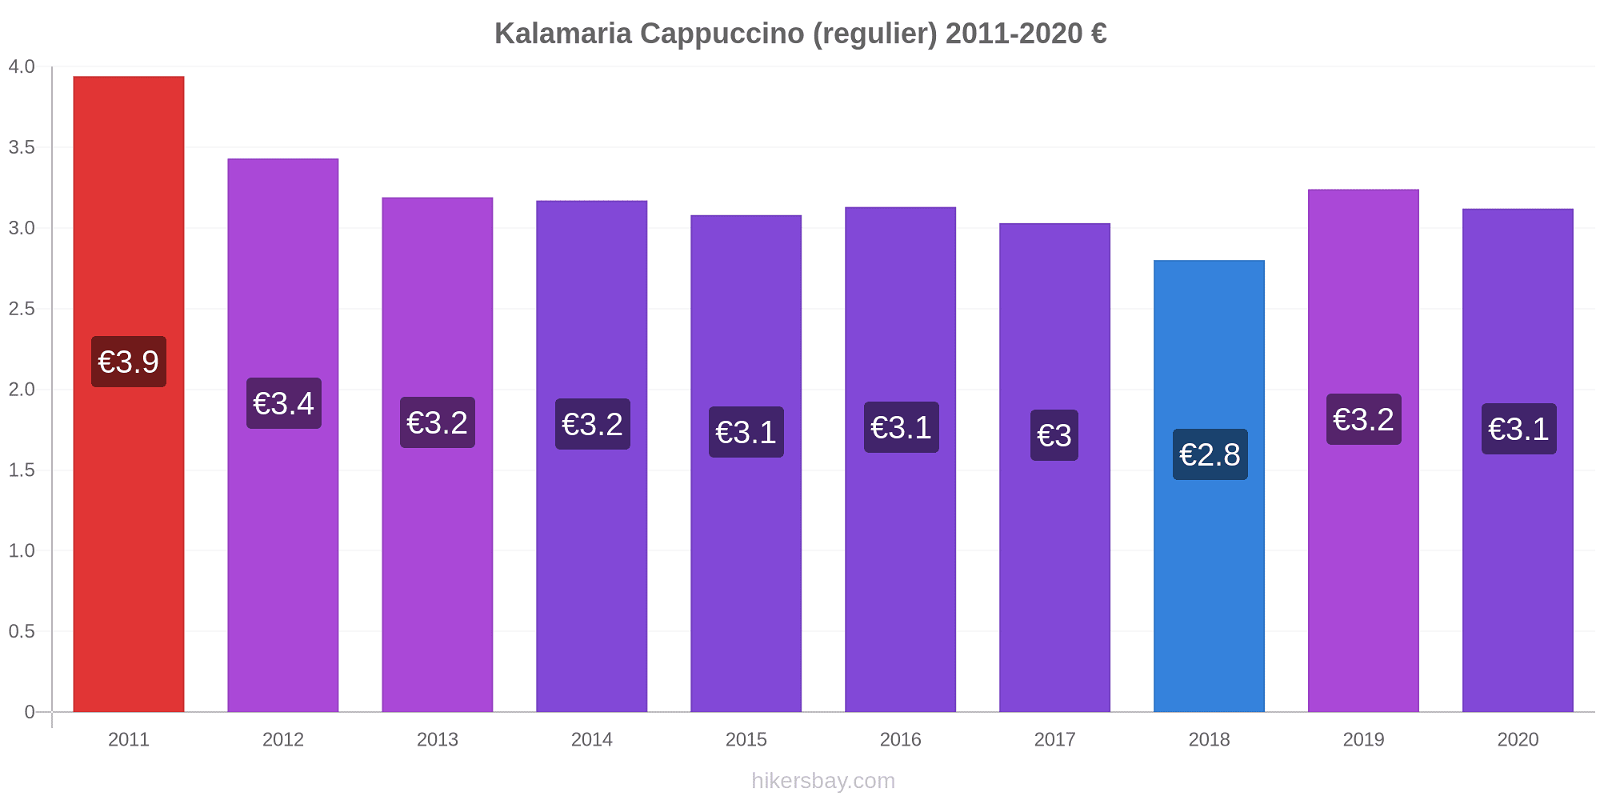 Kalamaria prijswijzigingen Cappuccino (regelmatige) hikersbay.com